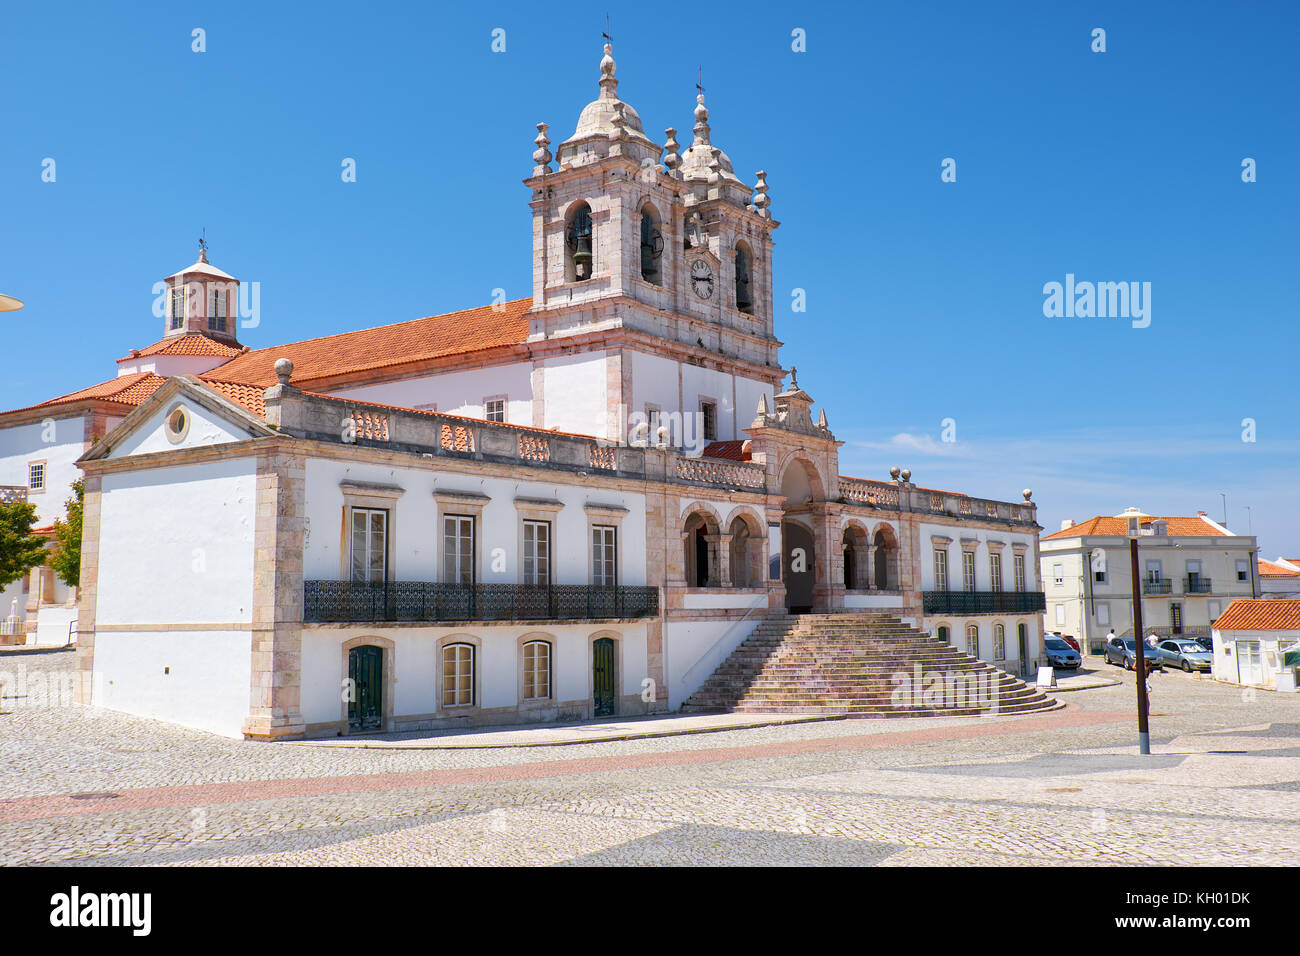 La vista di Nossa Senhora da nazare chiesa sulla piazza centrale della cittadina nazare. Portogallo Foto Stock